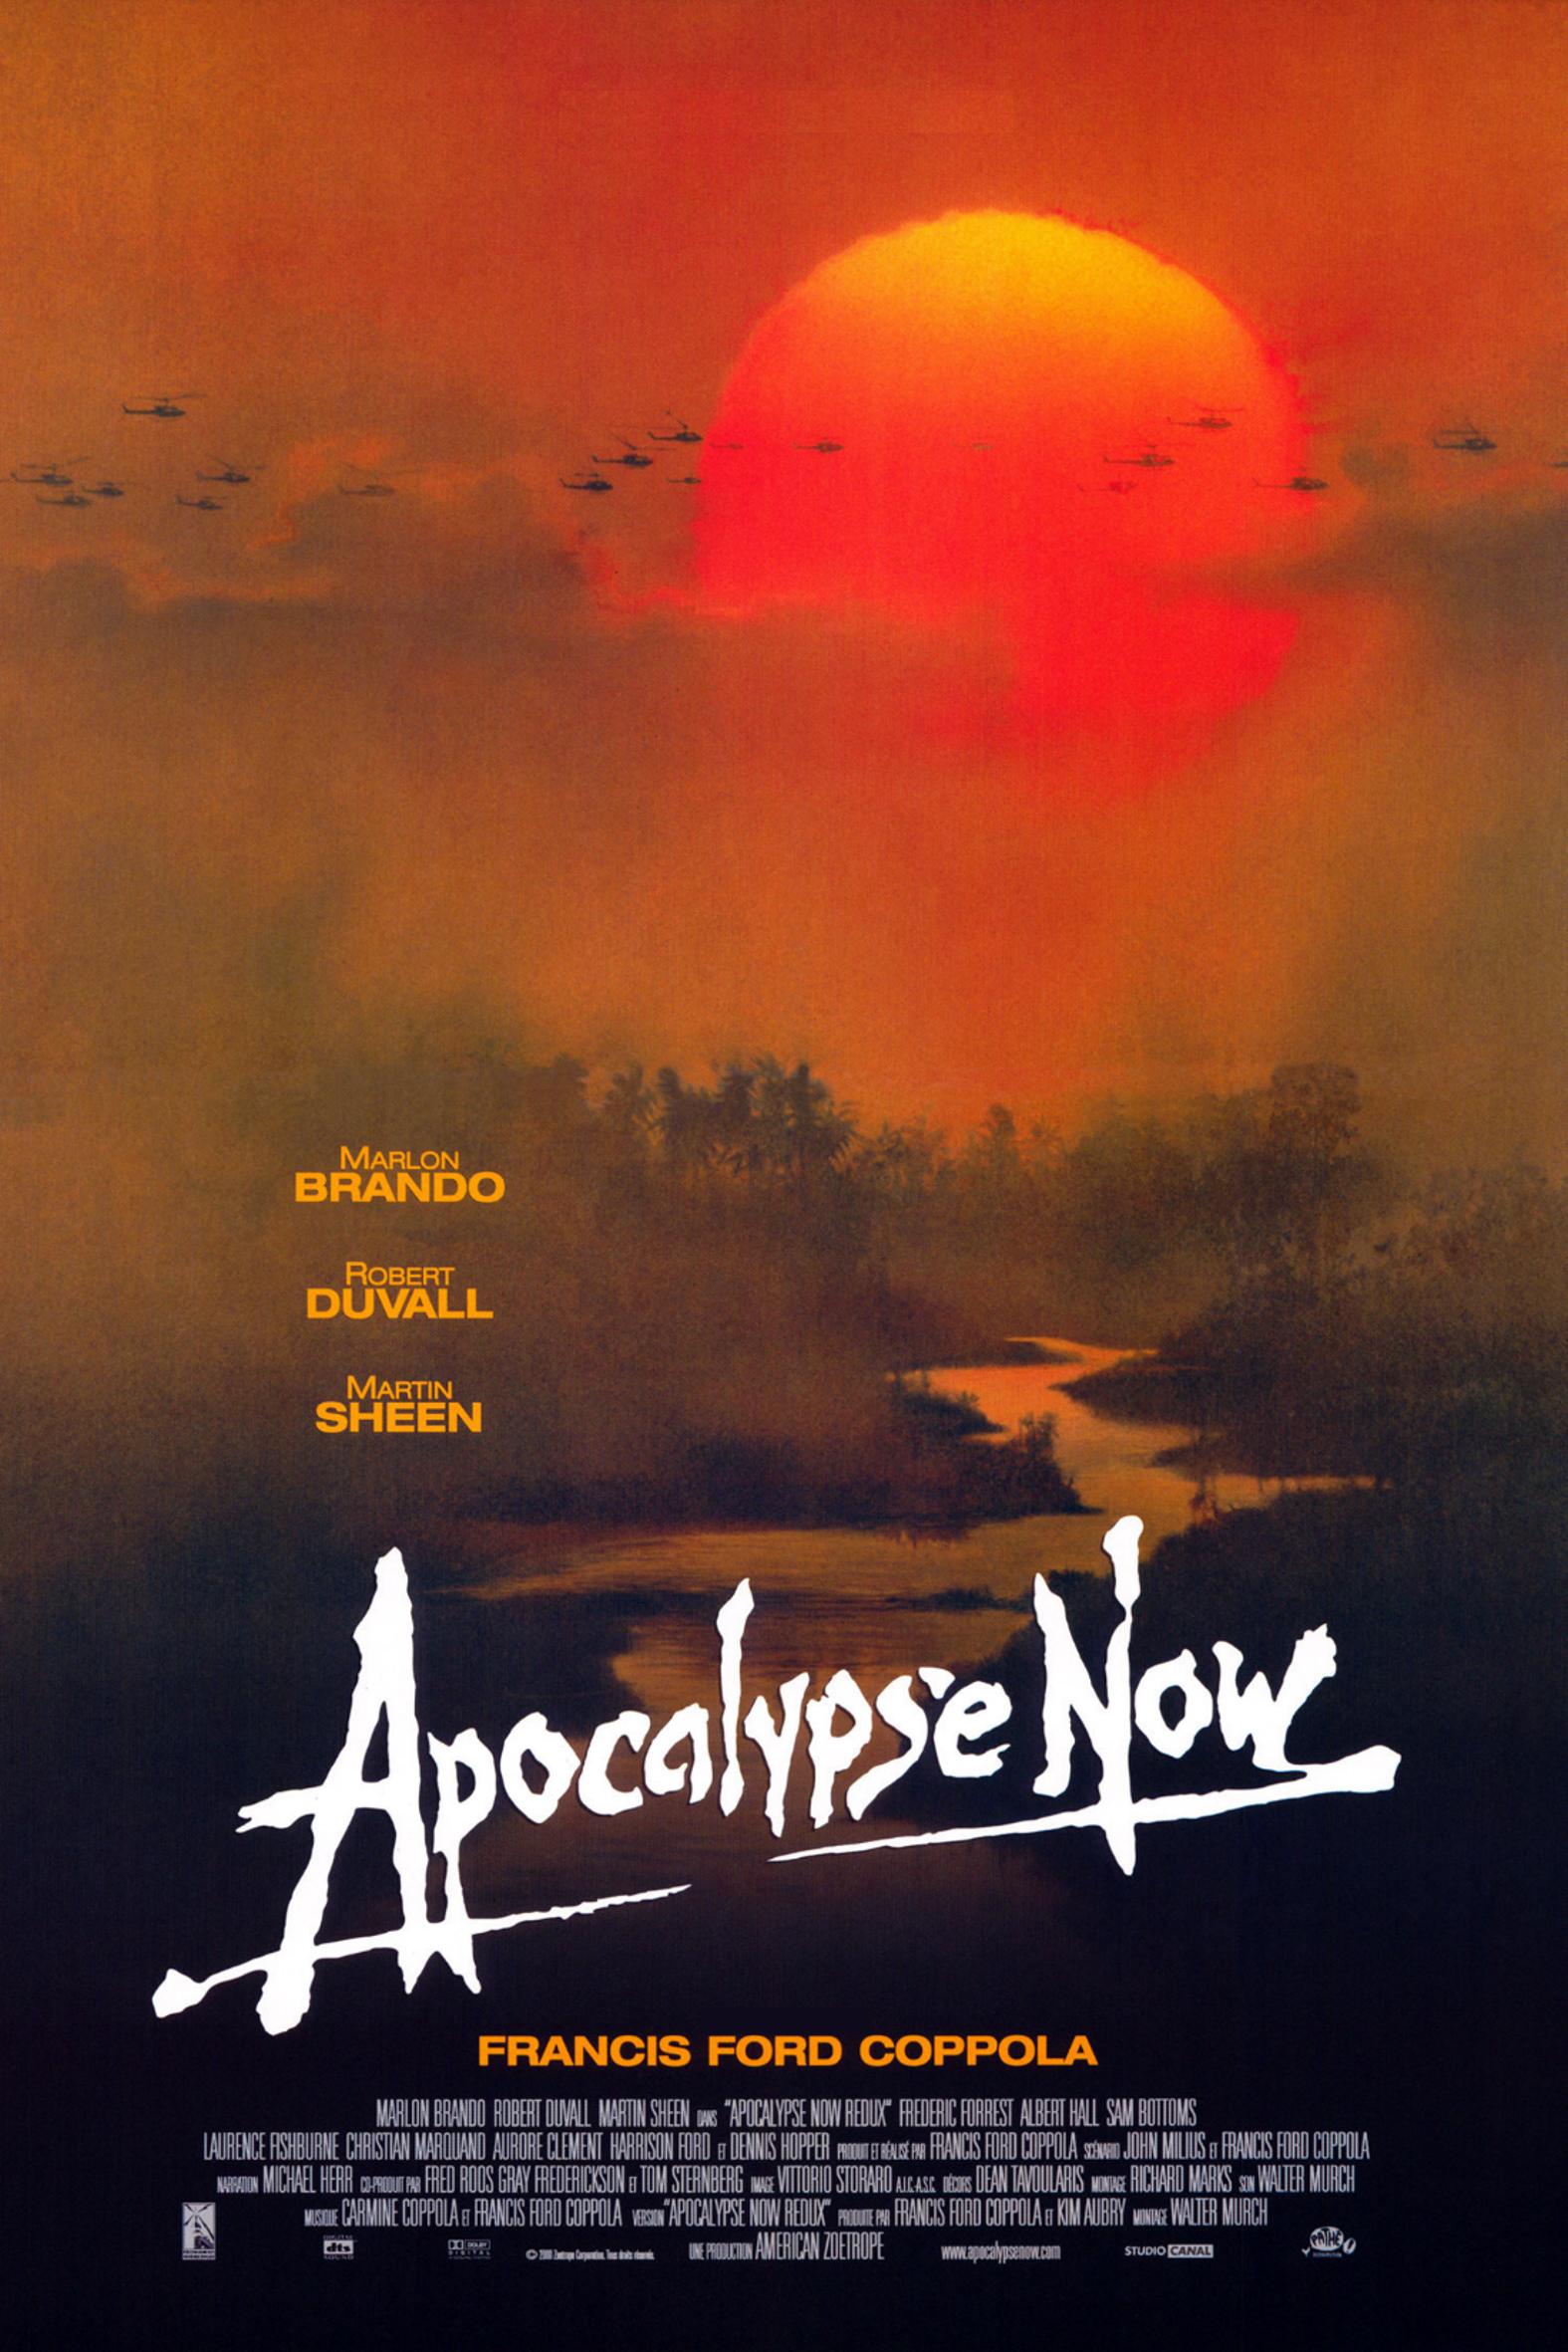 Nonton film Apocalypse Now layarkaca21 indoxx1 ganool online streaming terbaru